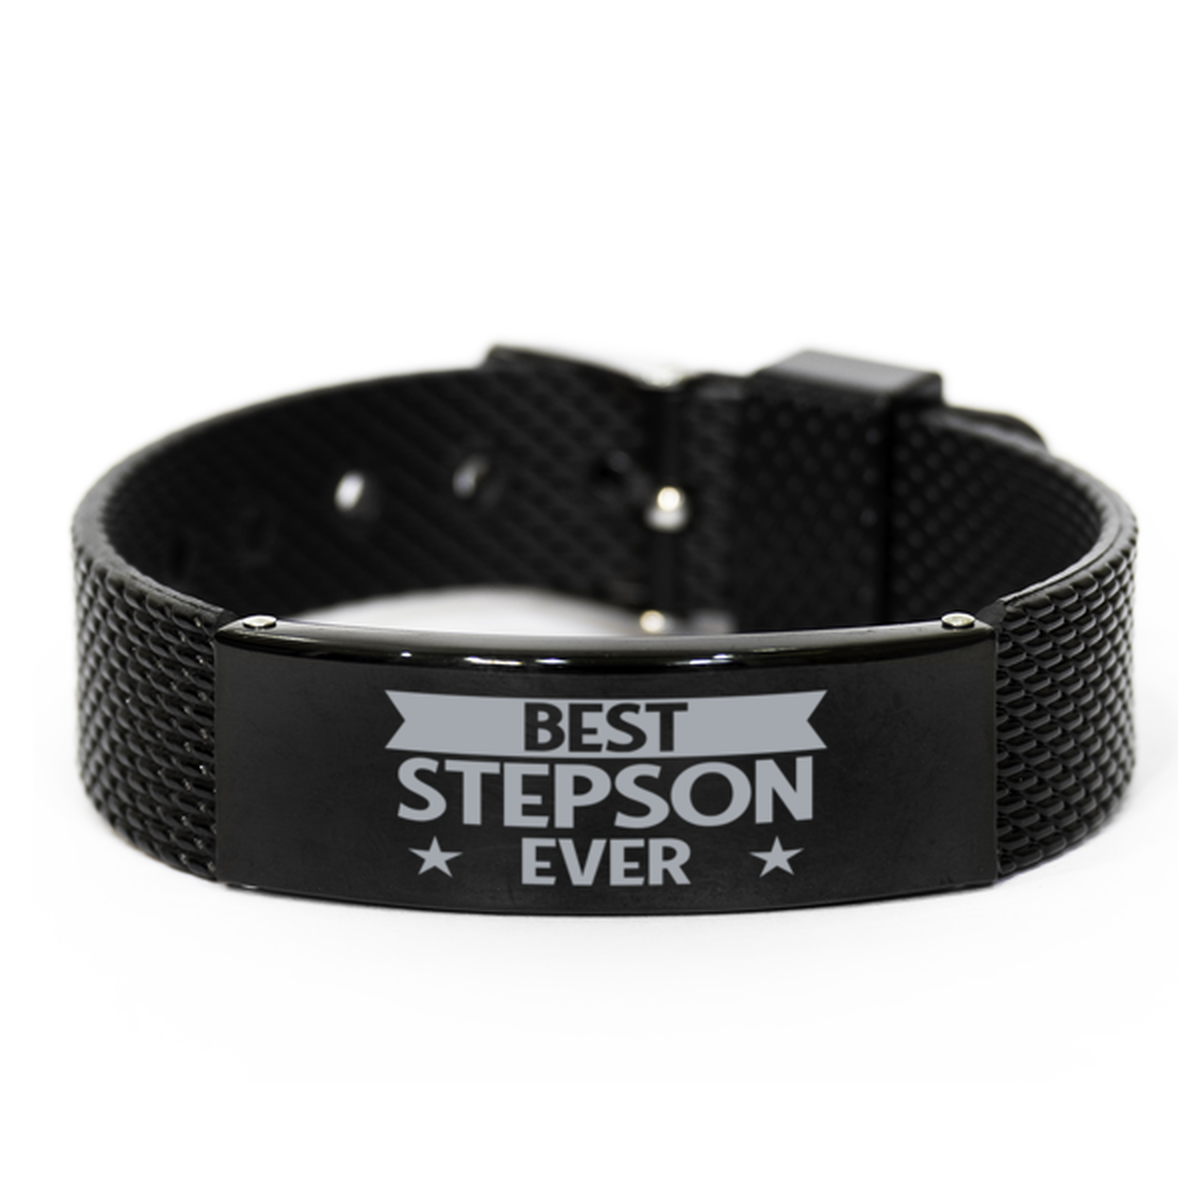 Best Stepson Ever Stepson Gifts, Gag Engraved Bracelet For Stepson, Best Family Gifts For Men